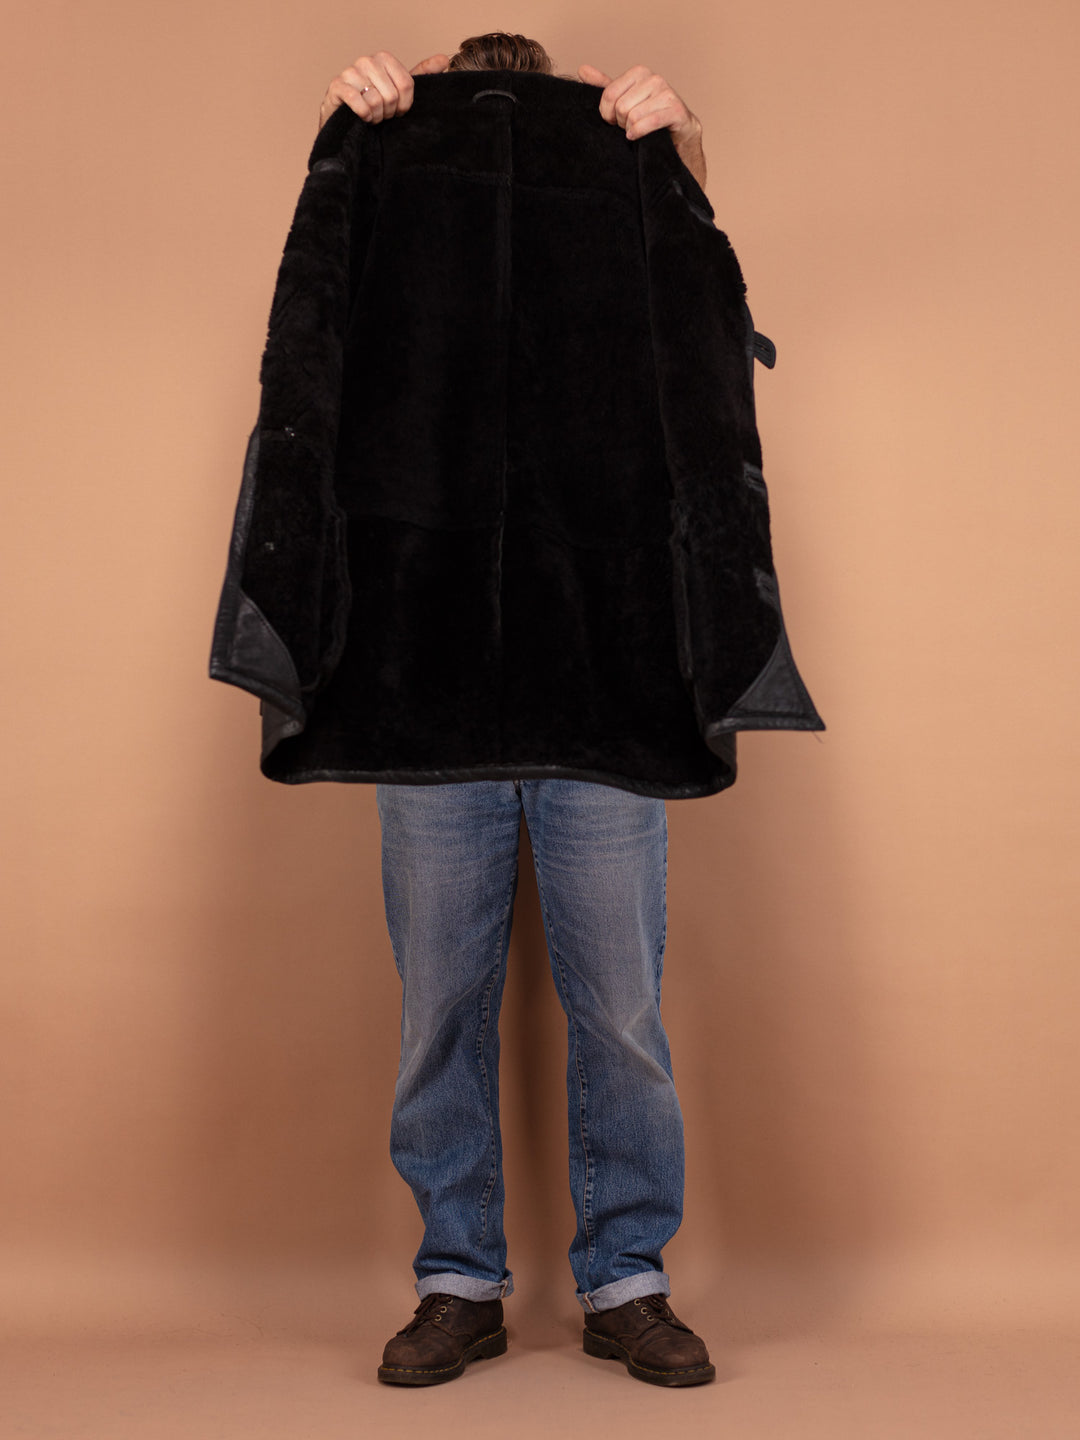 Black Sheepskin Leather Coat 80's, Size Large, Black Shearling Coat, Men Winter Overcoat, Vintage Sustainable Clothing, Minimalist Coat